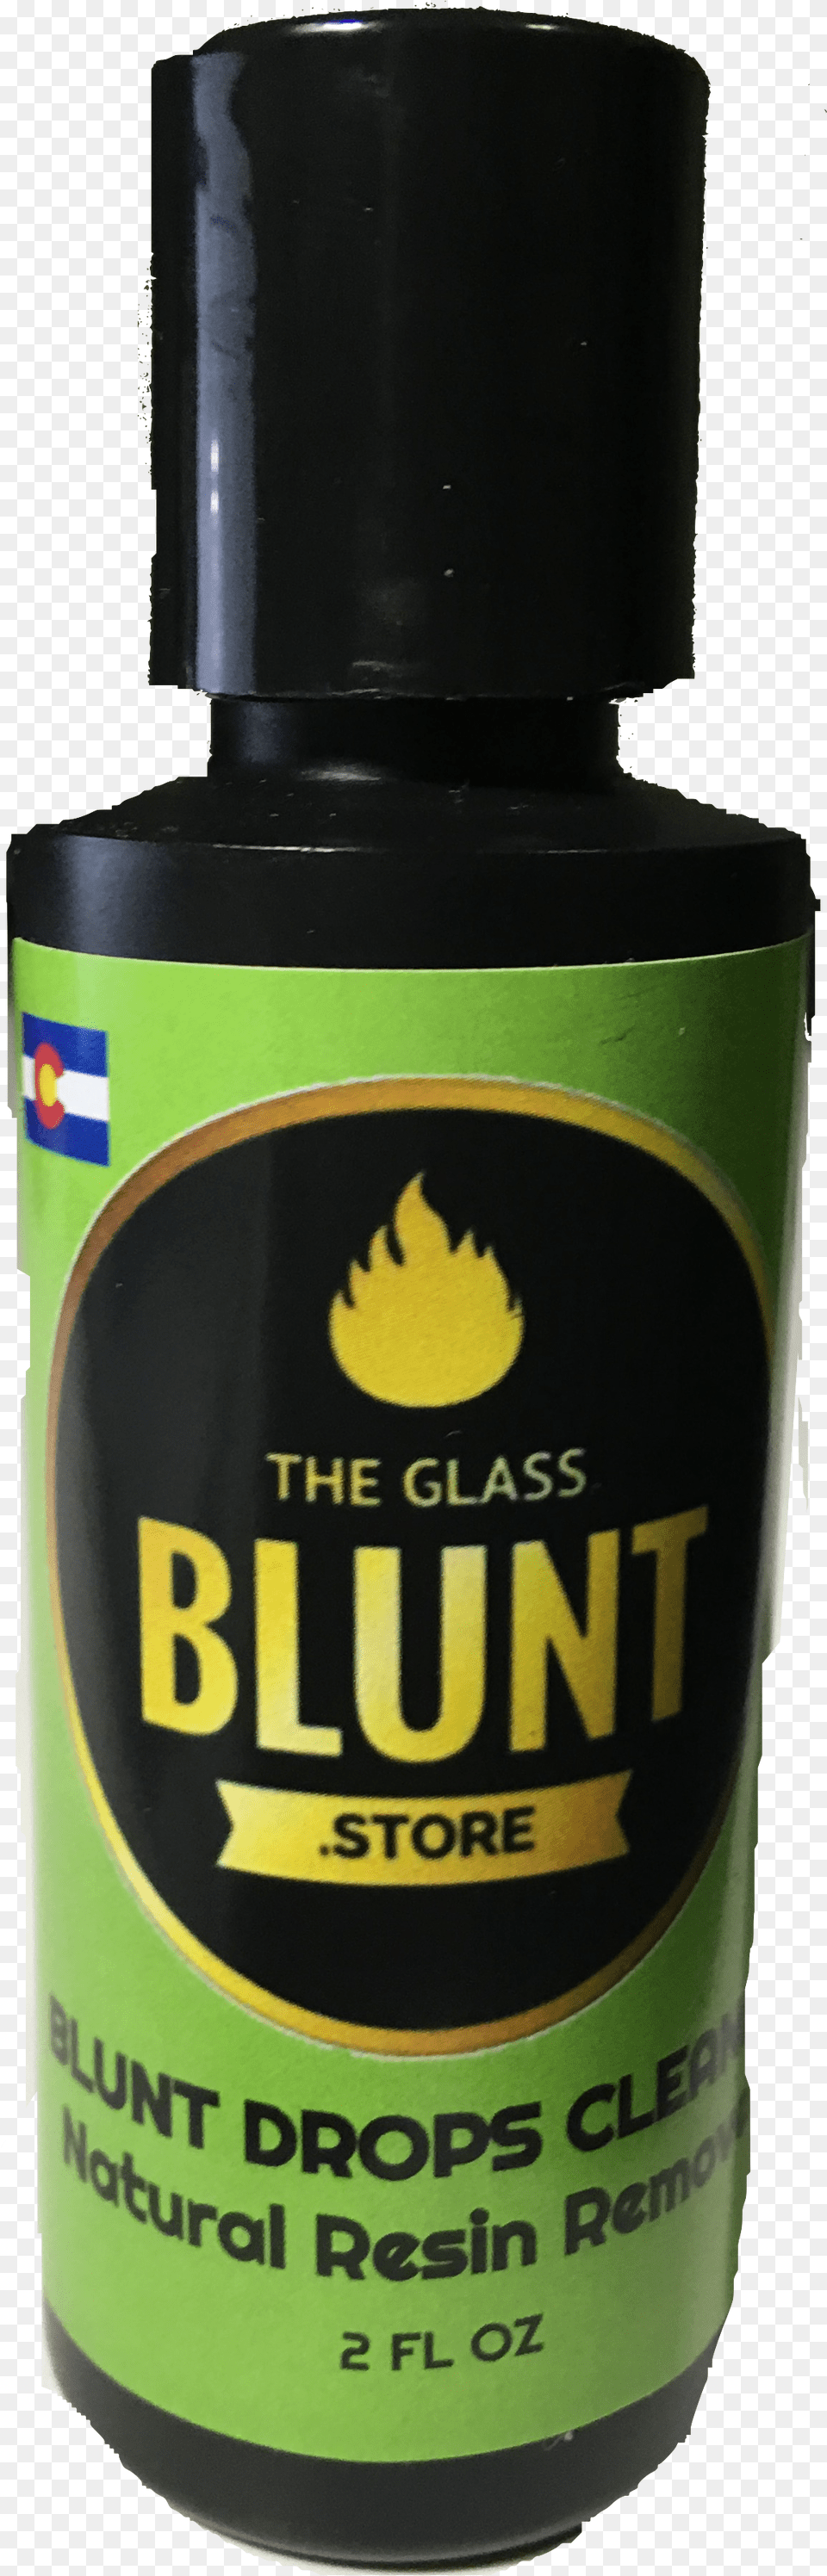 Natural Blunt Drops Guinness, Bottle, Alcohol, Beer, Beverage Free Png